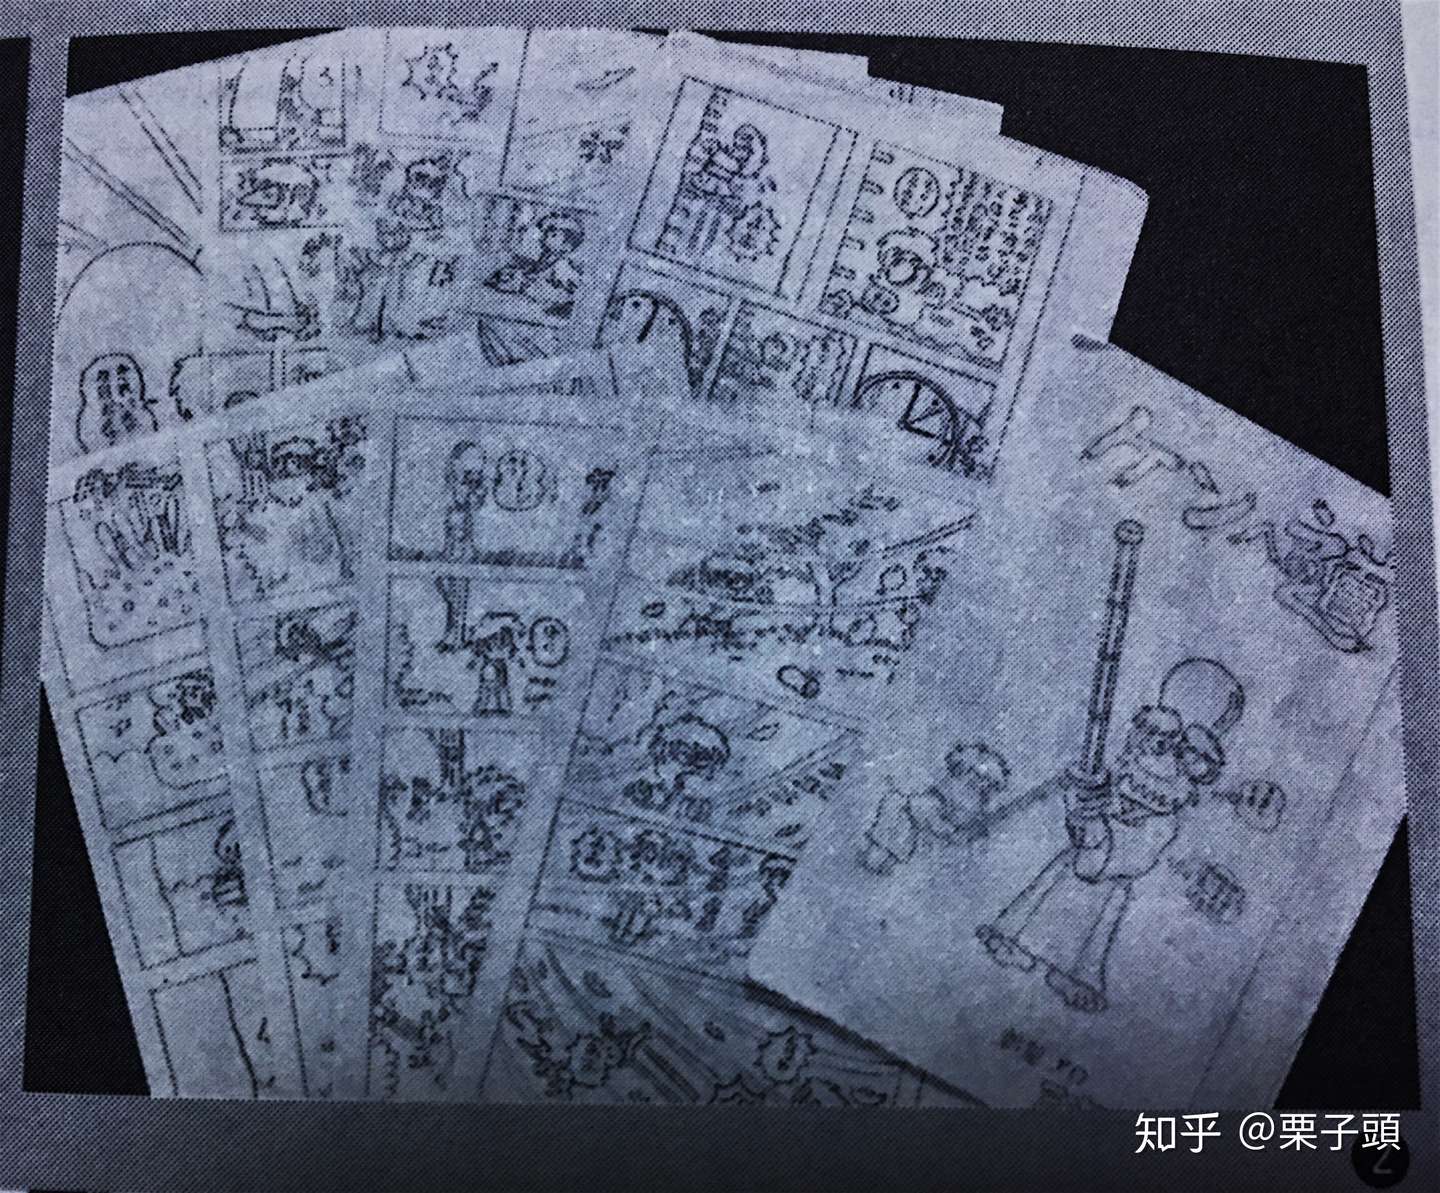 最新 漫画太郎学校 検索画像の壁紙